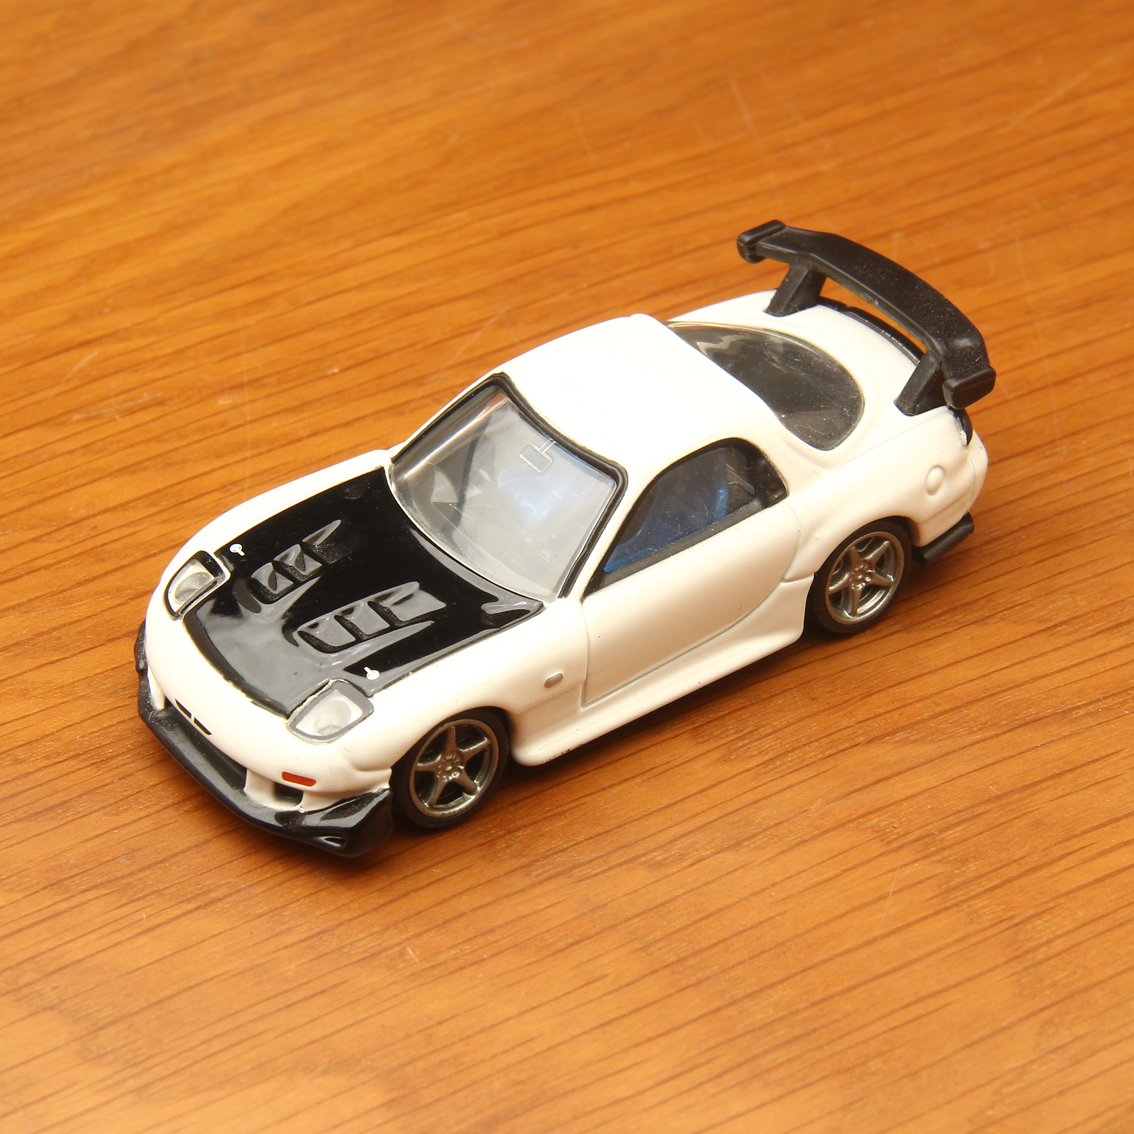 Bán Xe Mô Hình Tĩnh Tomica Mazda Rx-7 Premium 1:62 White Chỉ 85.000₫ | Hàng  Đồ Chơi